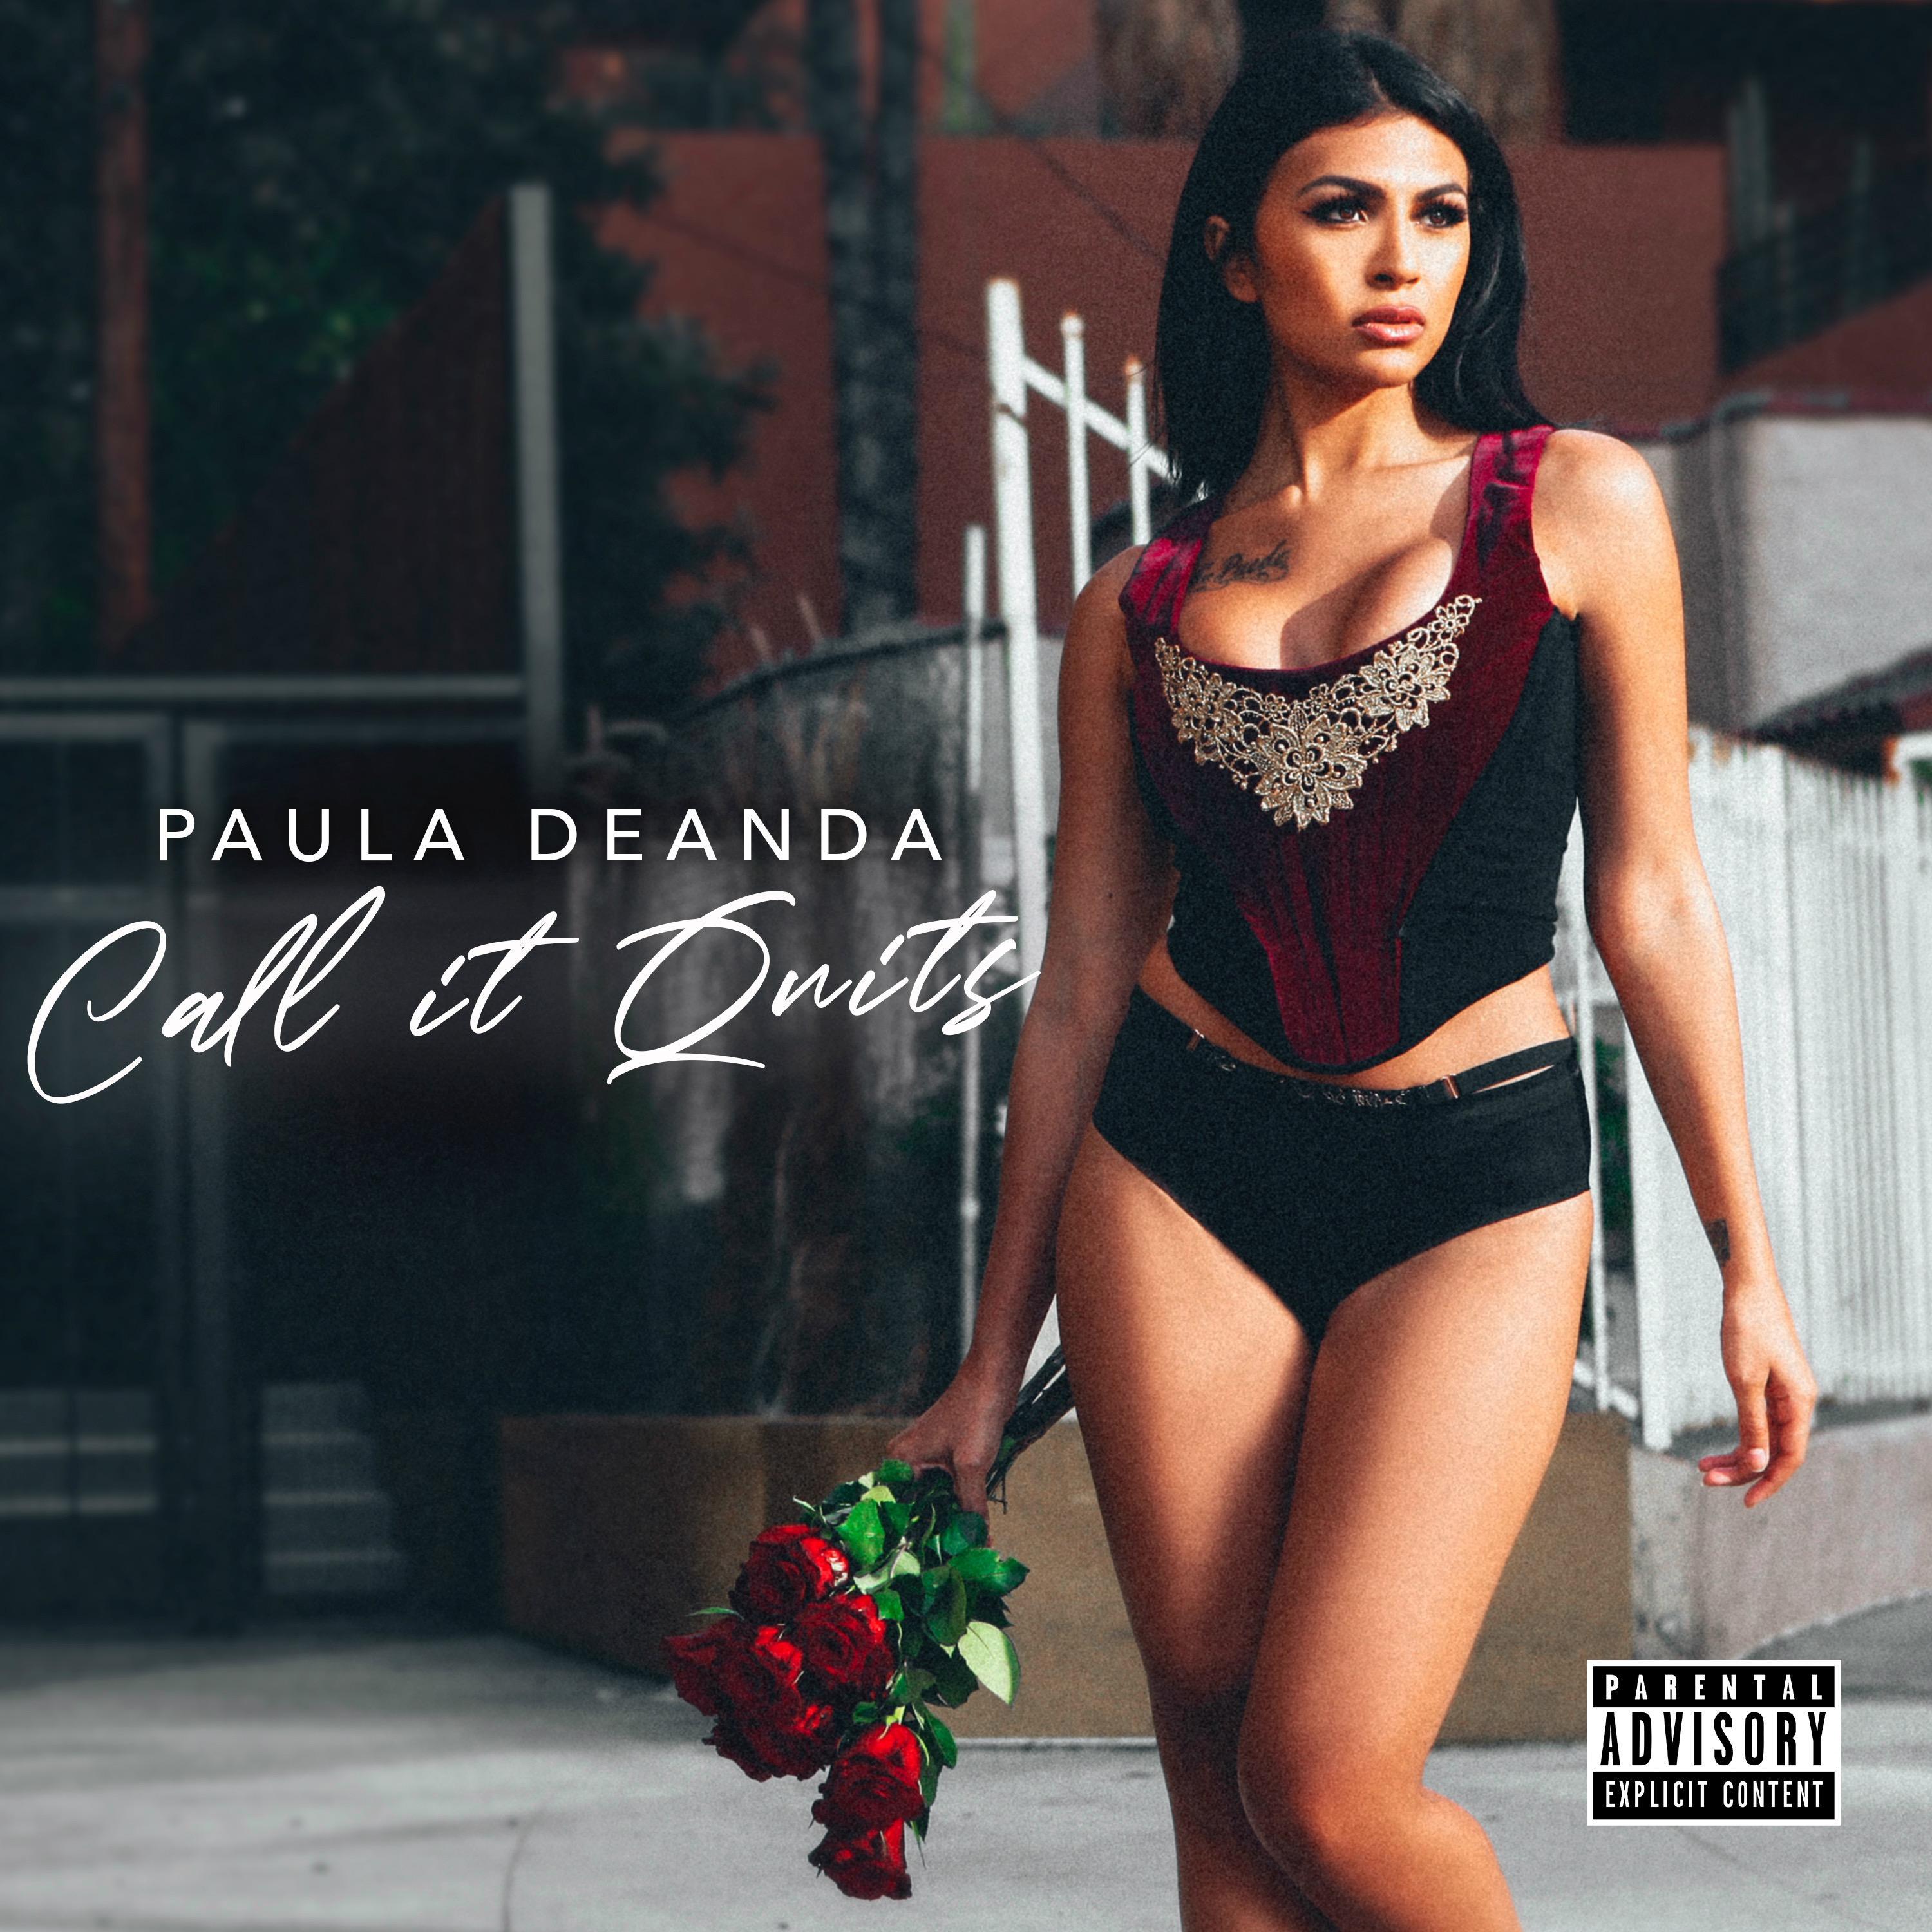 Call It Quits - Paula DeAnda - 专 辑 - 网 易 云 音 乐